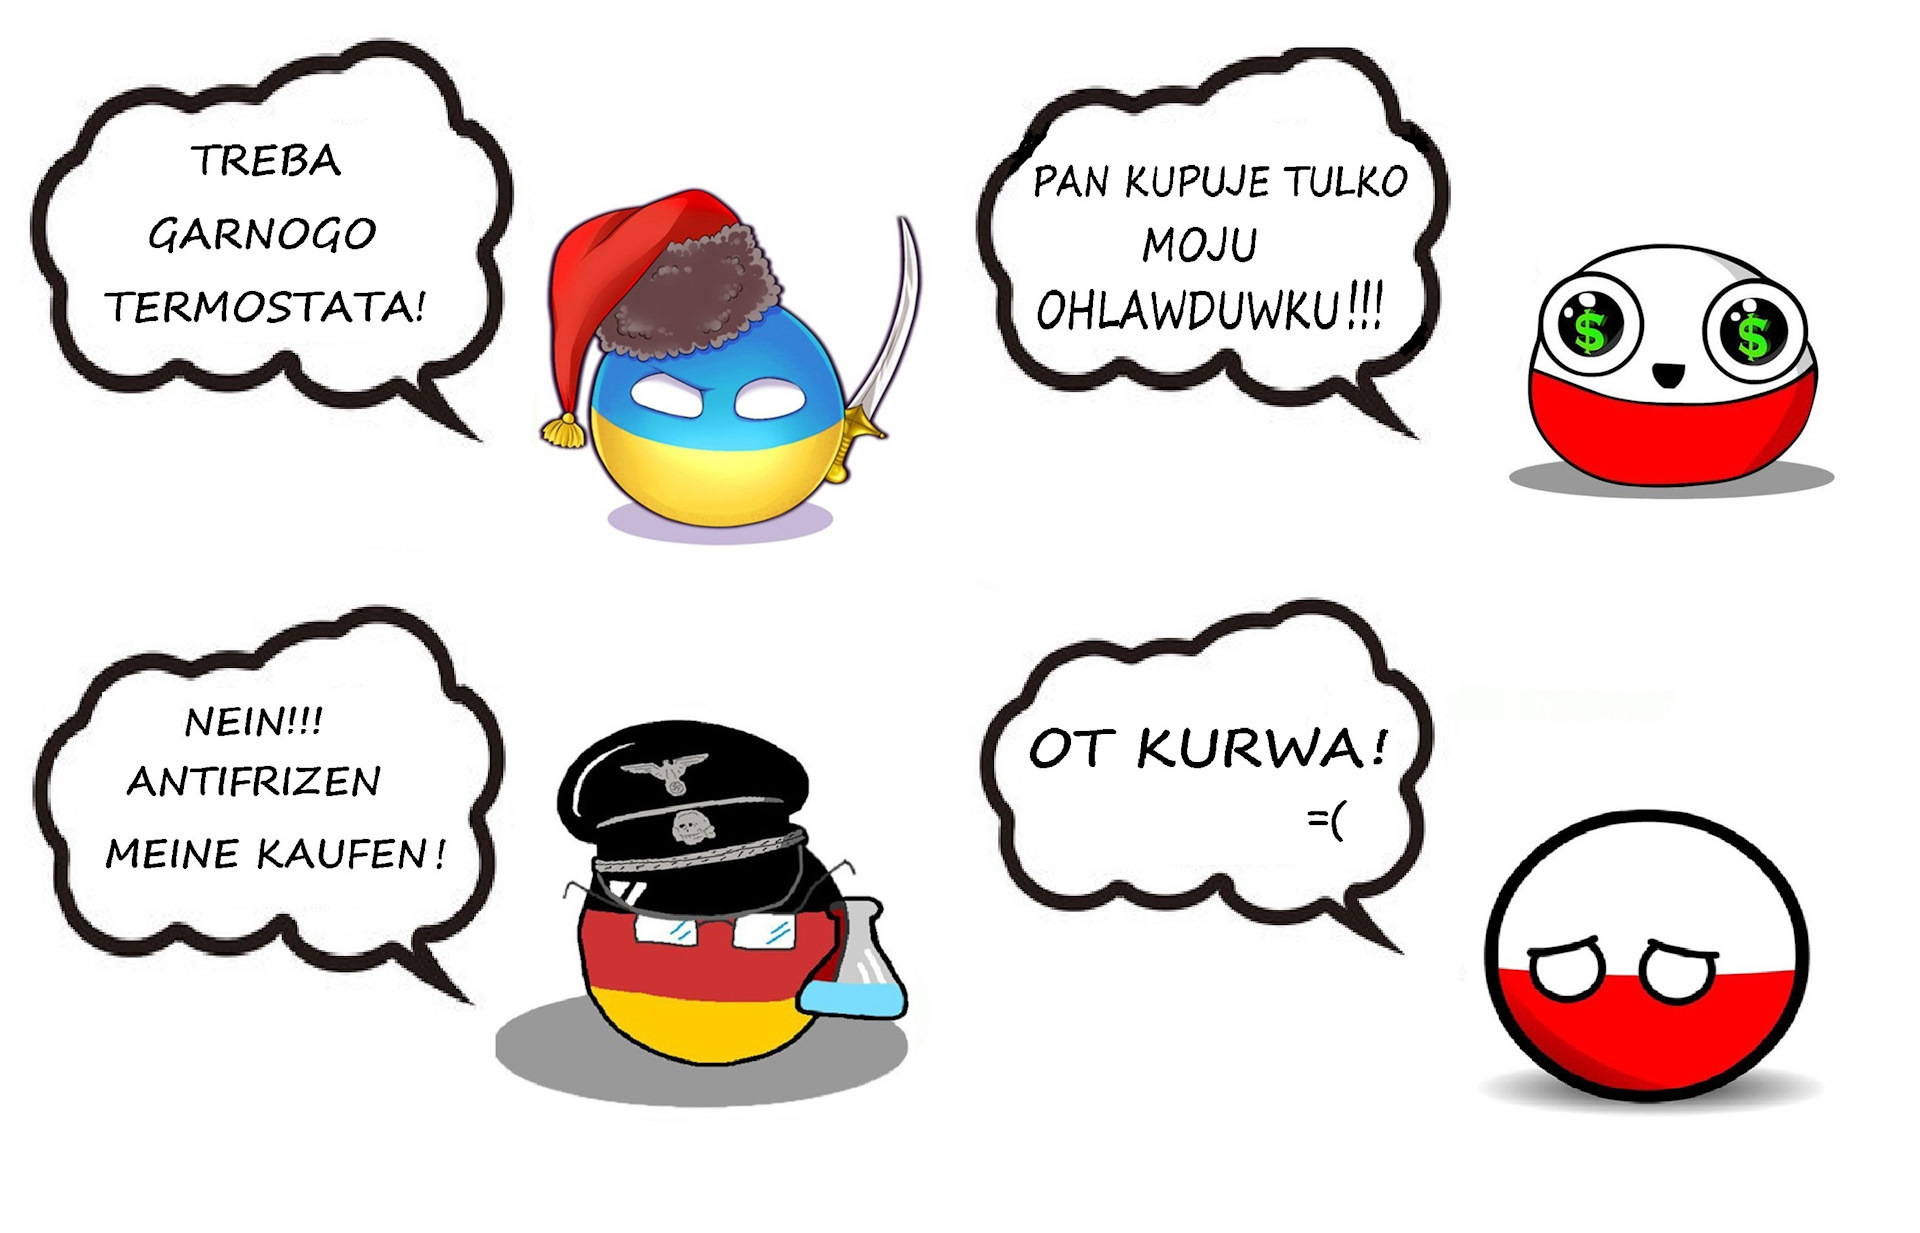 Kurwa bobr перевод. Польша пше. Пше на польском. Польша пше пше. Пше пше поляки.